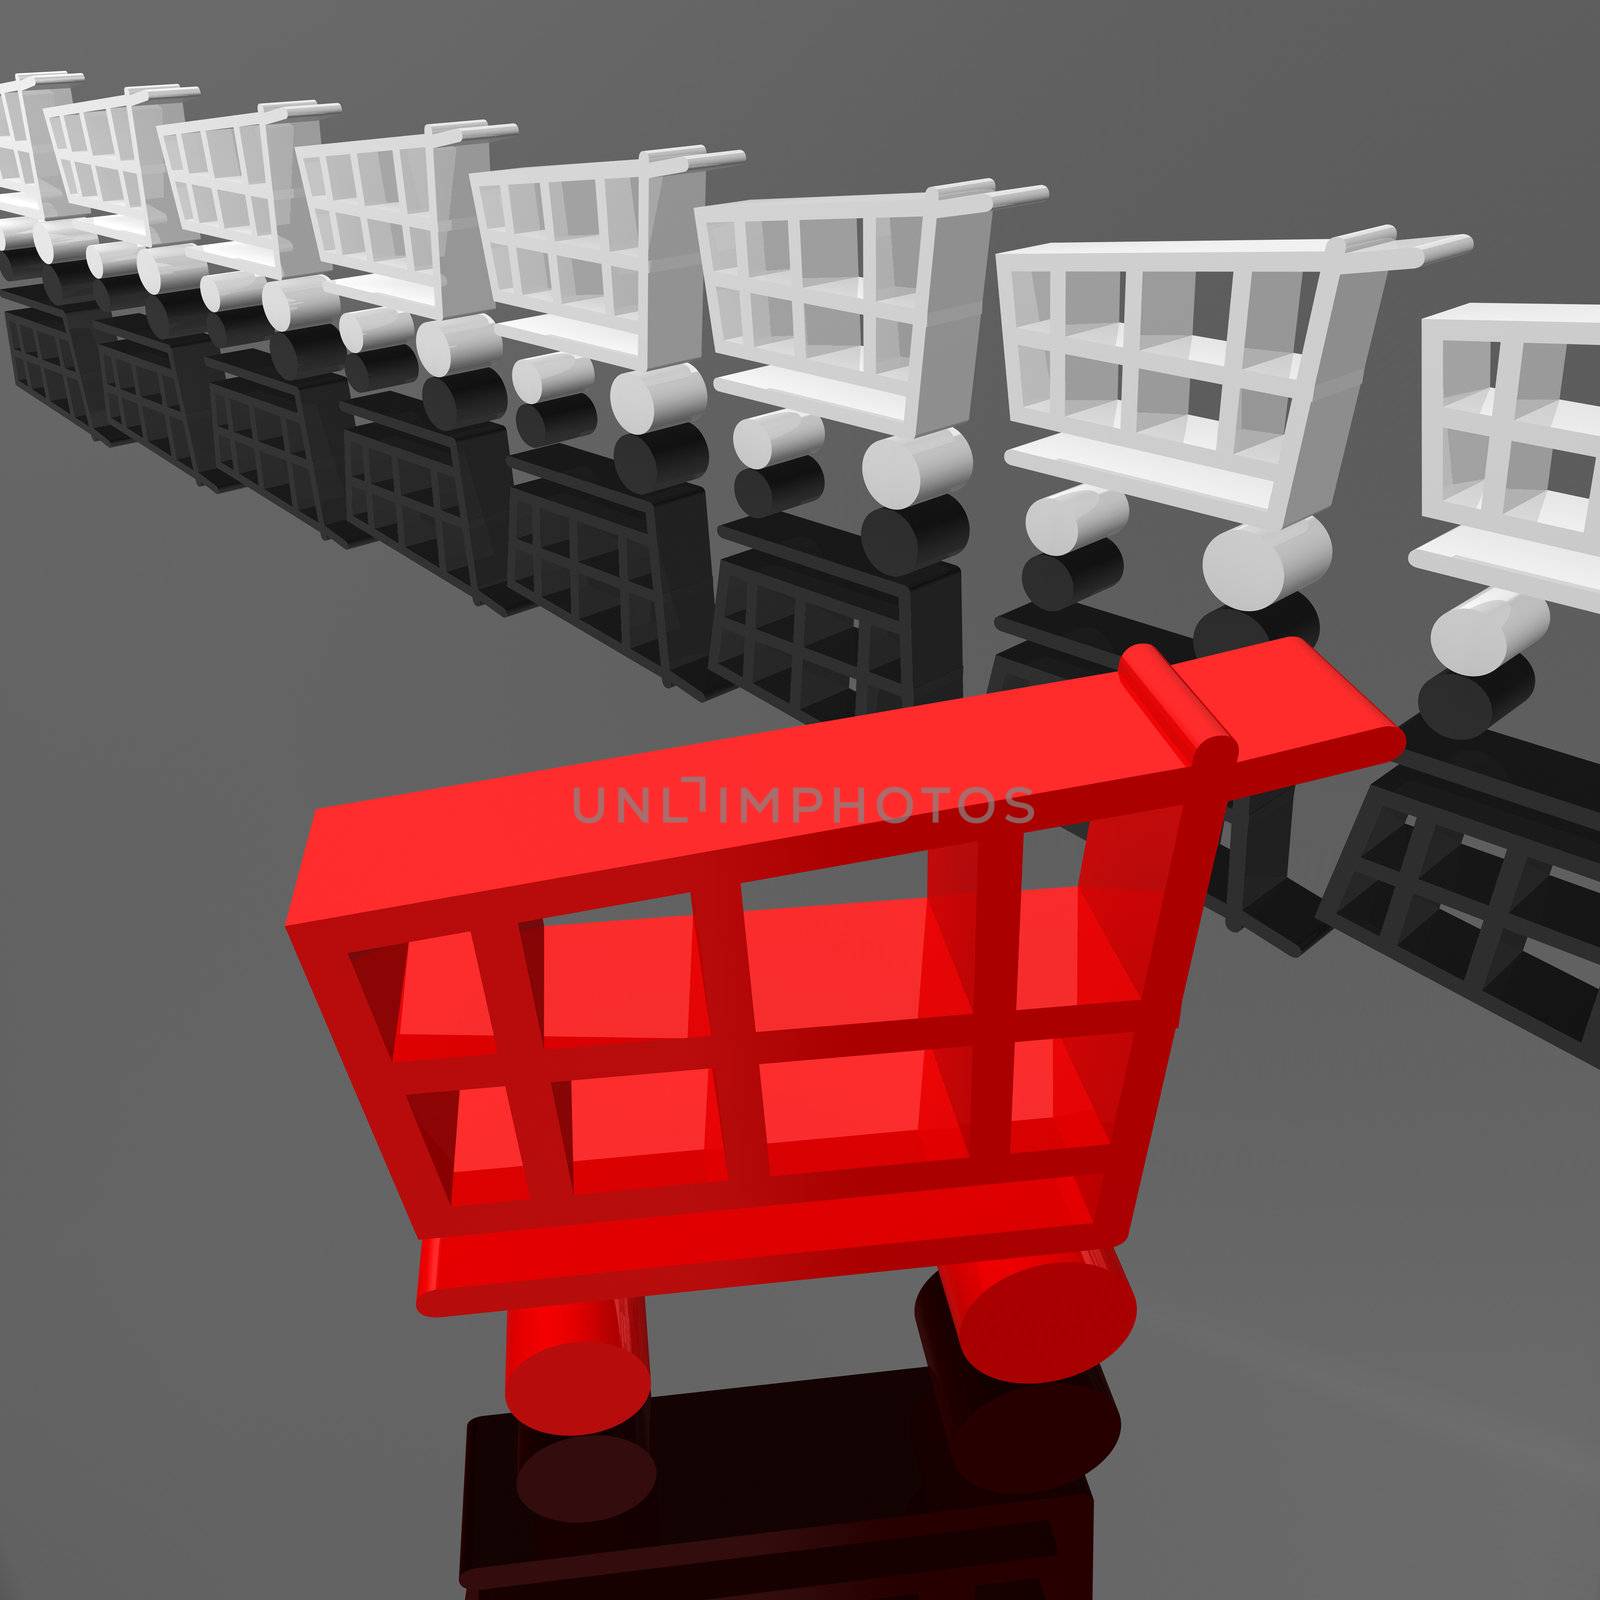 Shopping cart by carloscastilla